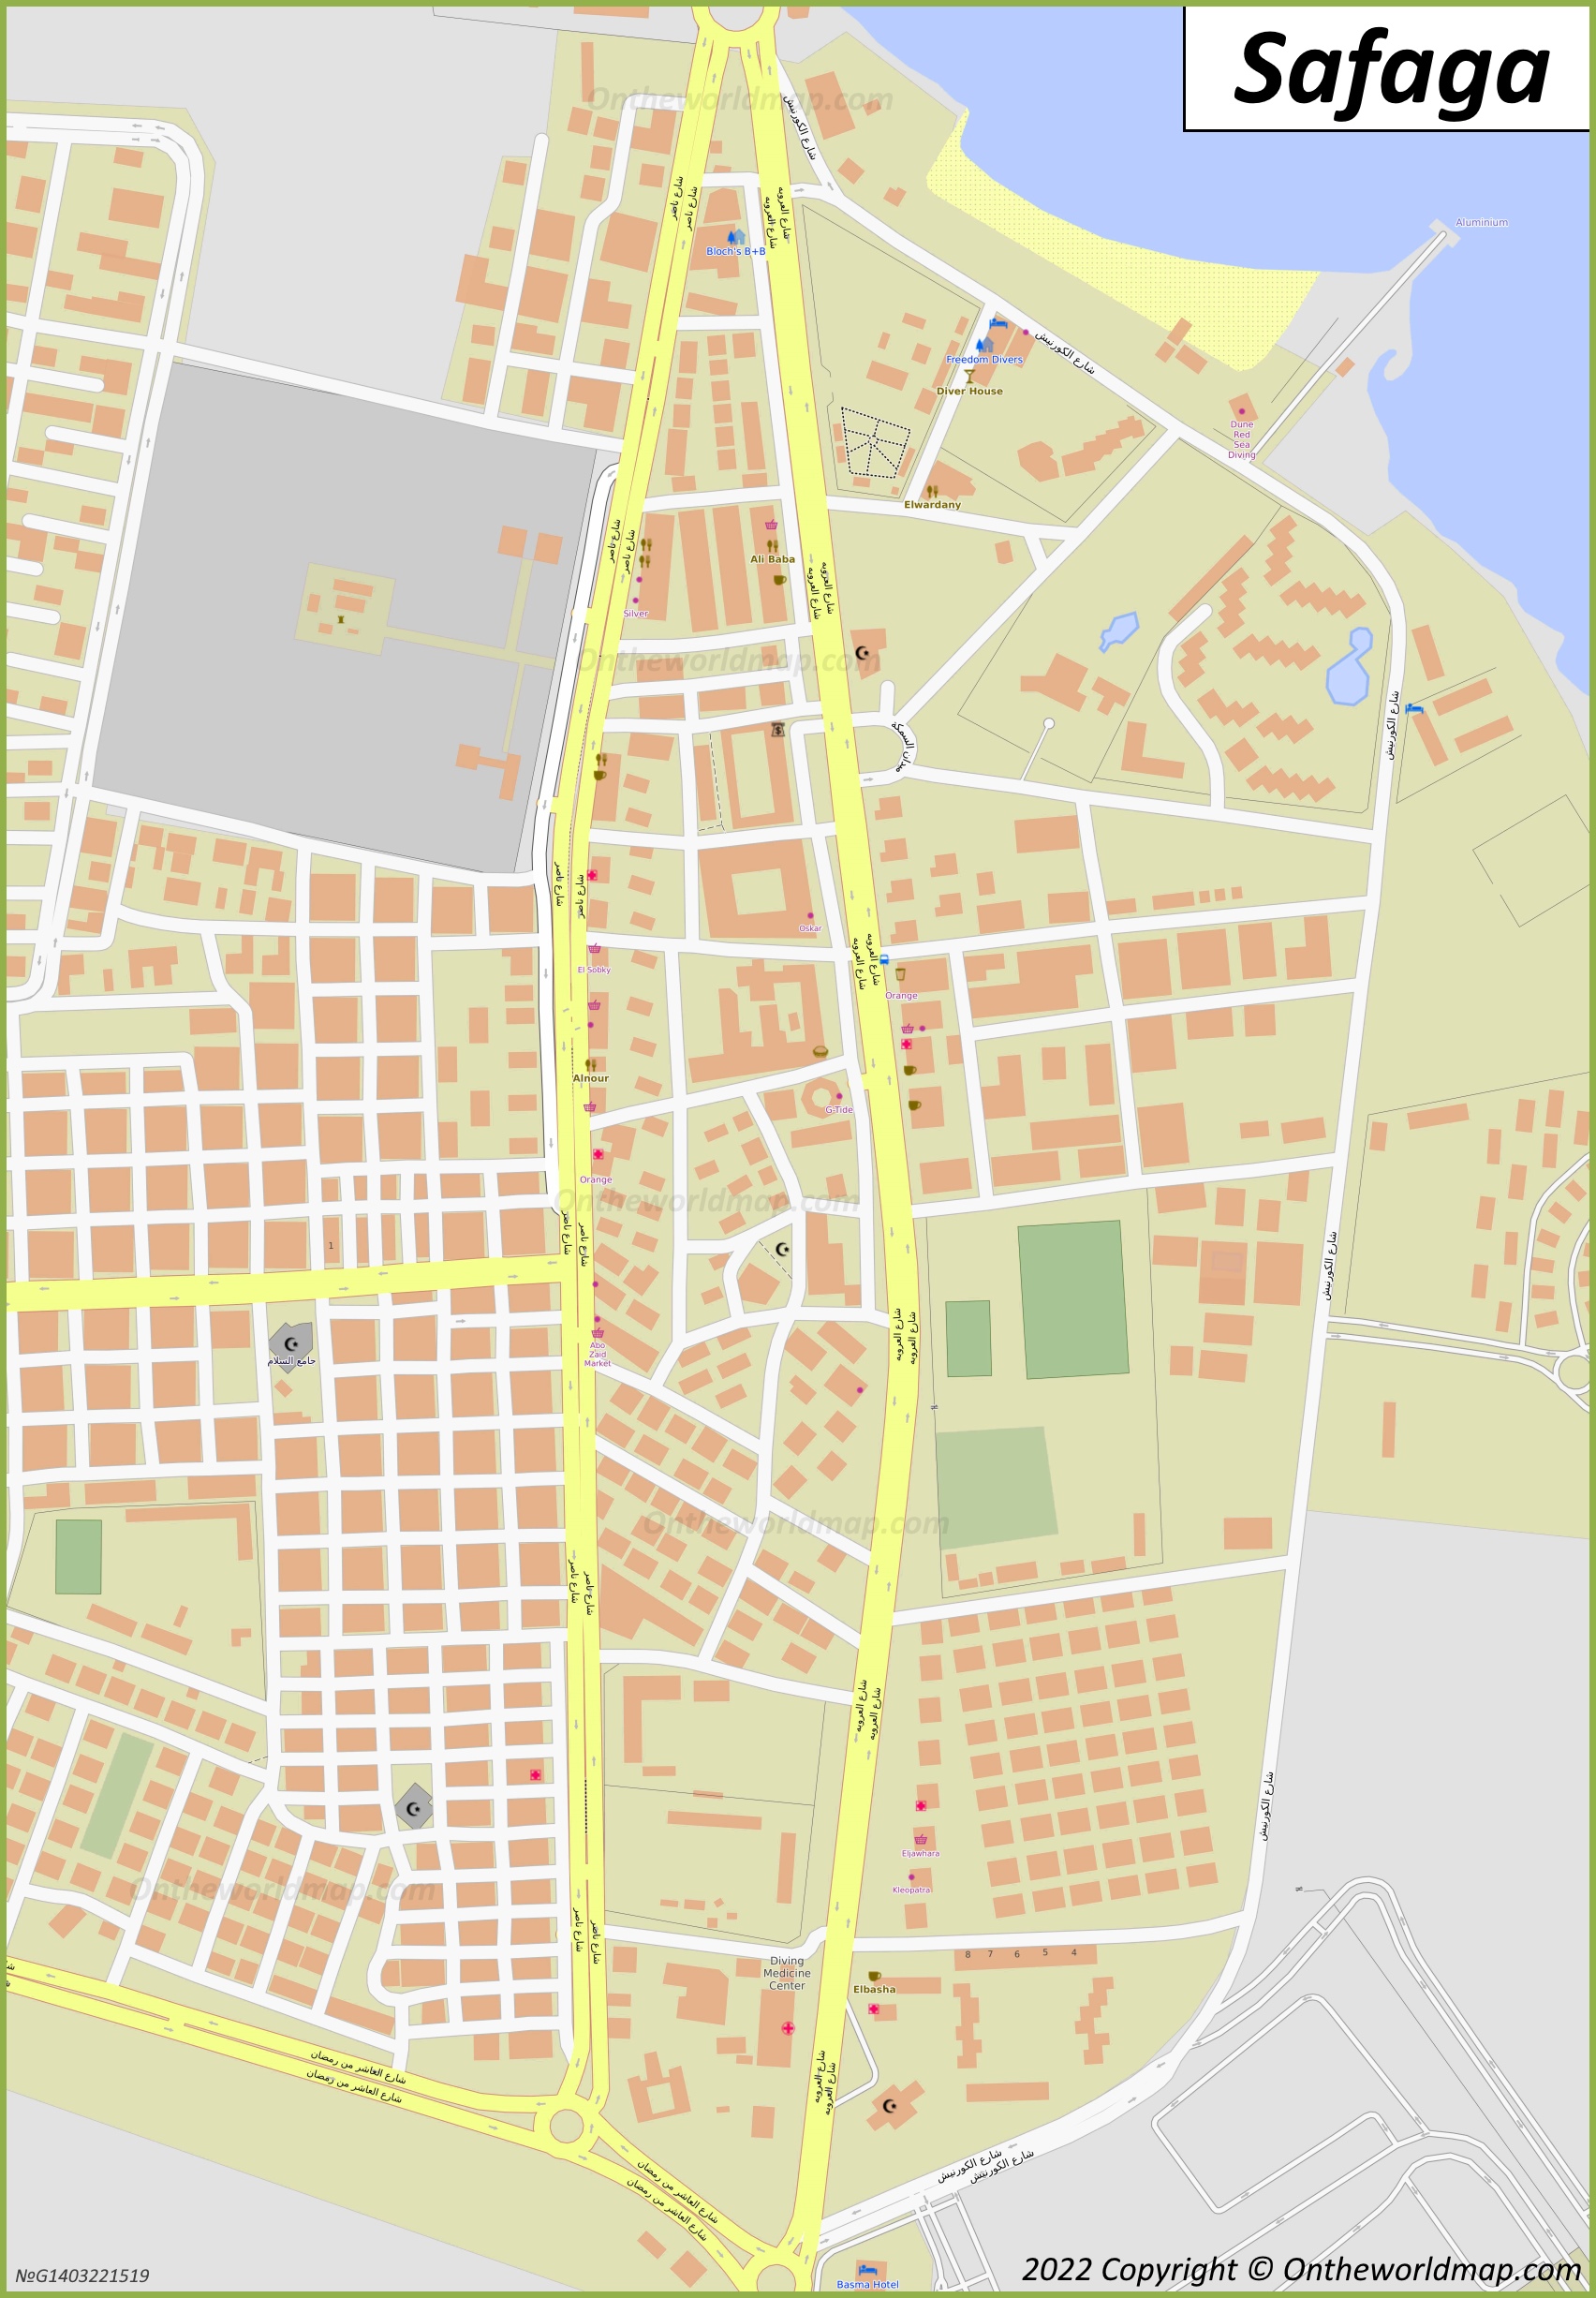 Safaga Town Centre Map